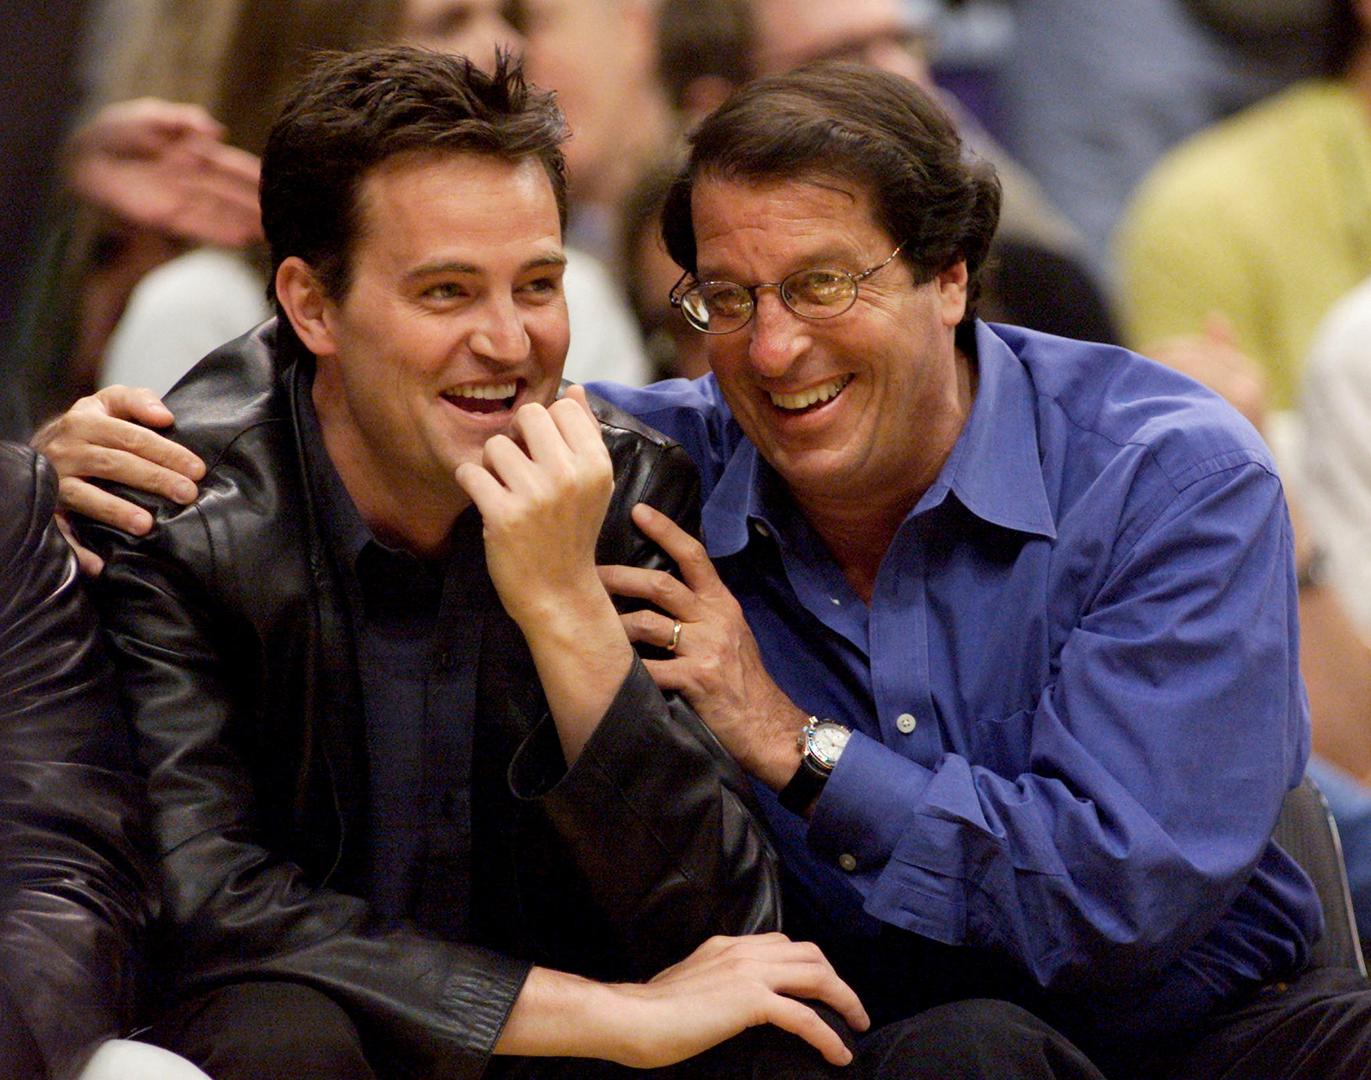 Glumac Matthew Perry i direktor studija Warner Bros Peter Roth zajedno gledaju prvu utakmicu NBA finala u Staples Centeru u Los Angelesu 7. lipnja 2000. godine.